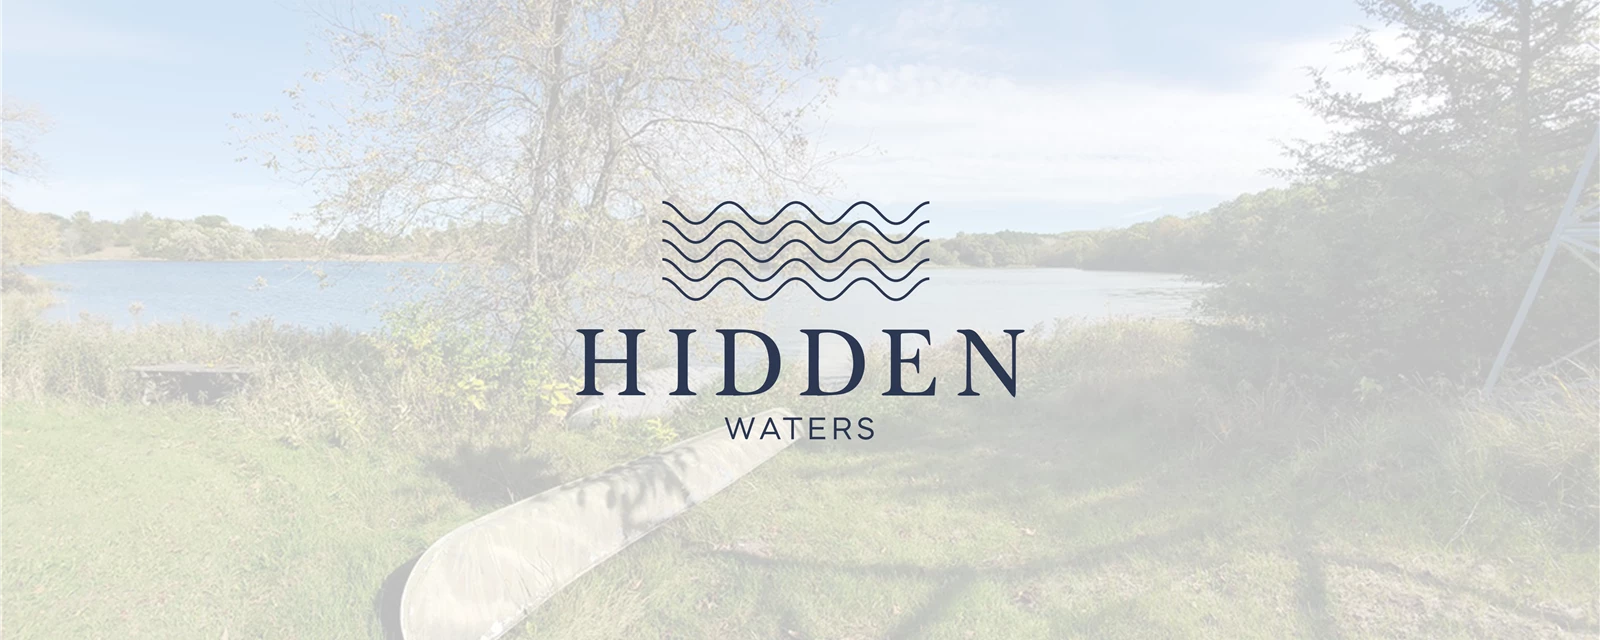 Hidden Waters Cover